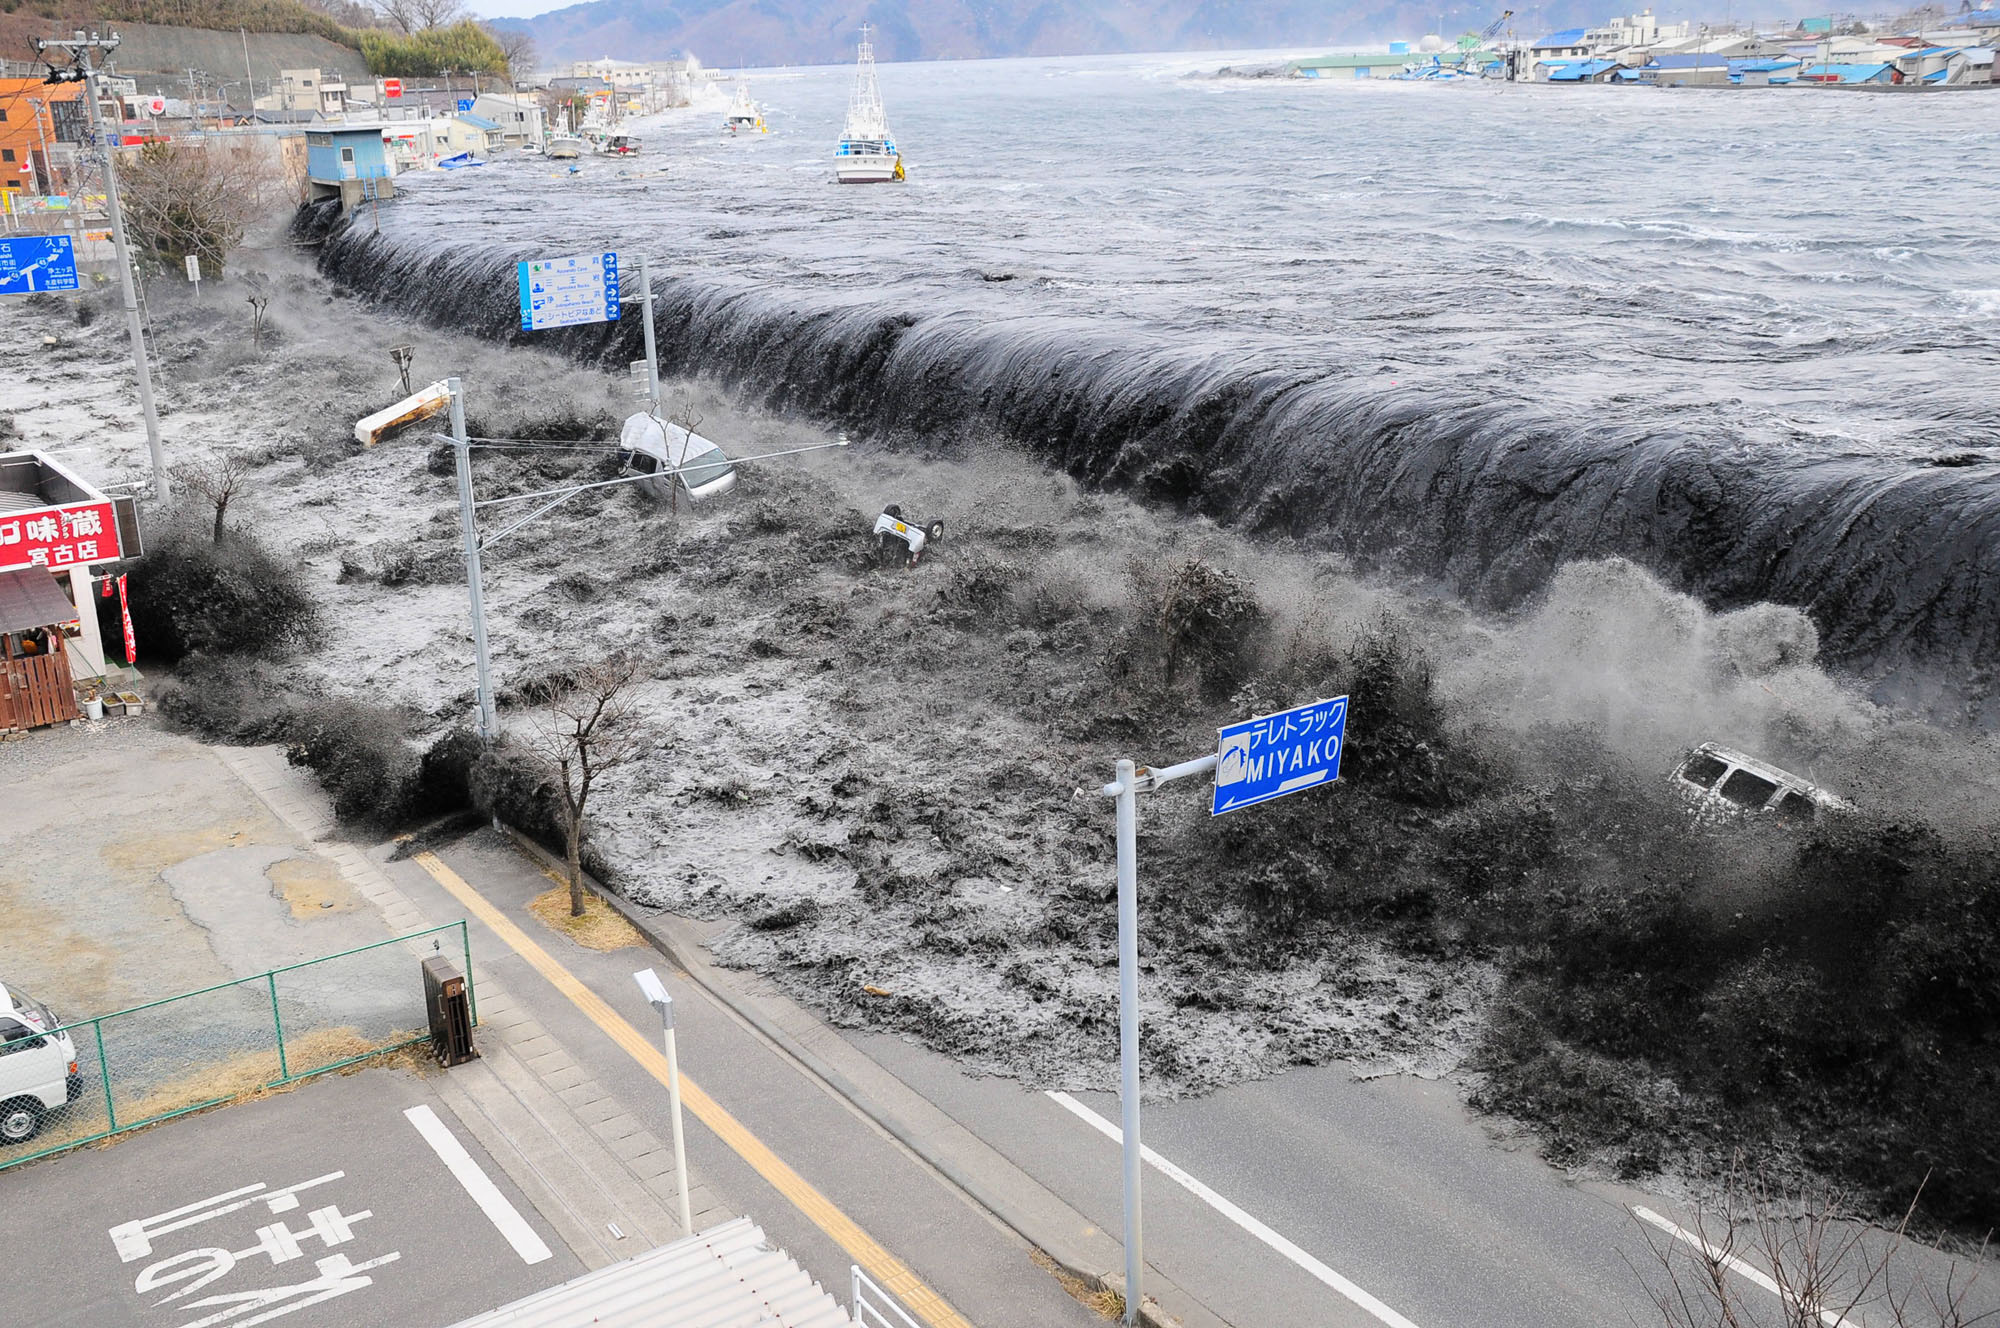 à¸œà¸¥à¸à¸²à¸£à¸„à¹‰à¸™à¸«à¸²à¸£à¸¹à¸›à¸ à¸²à¸žà¸ªà¸³à¸«à¸£à¸±à¸š tsunami tohoku japan